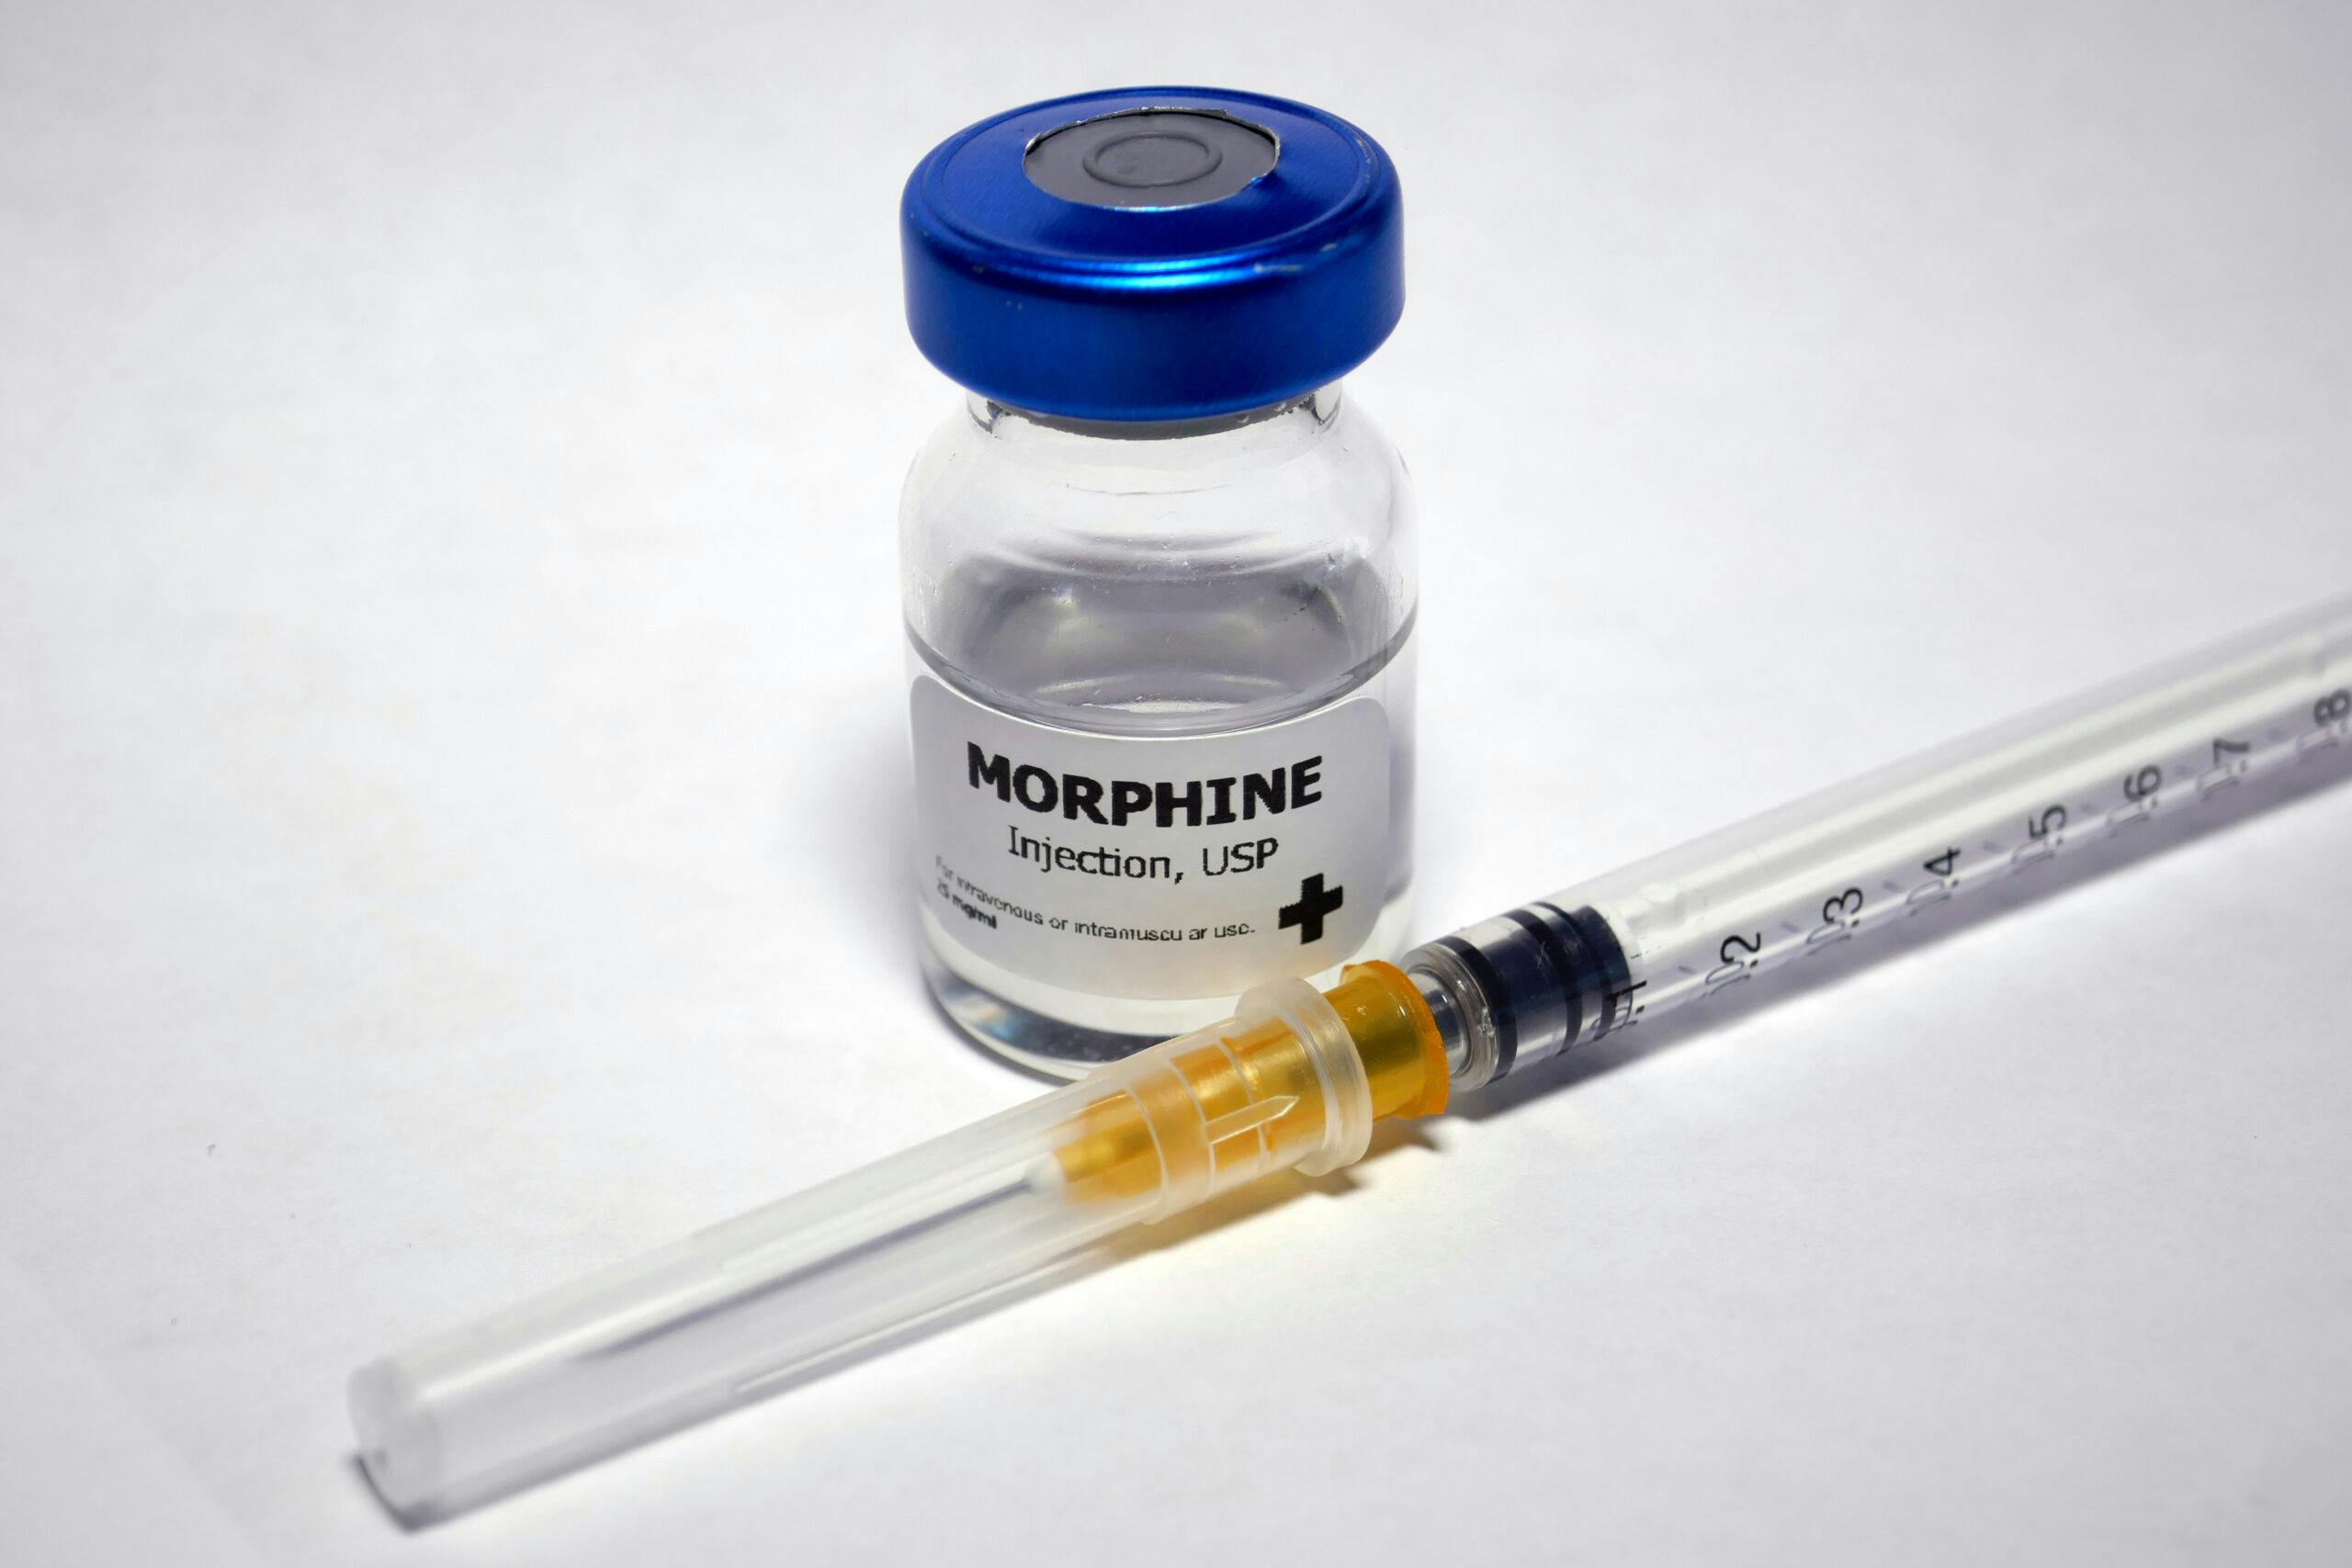 morphine bottle and needle